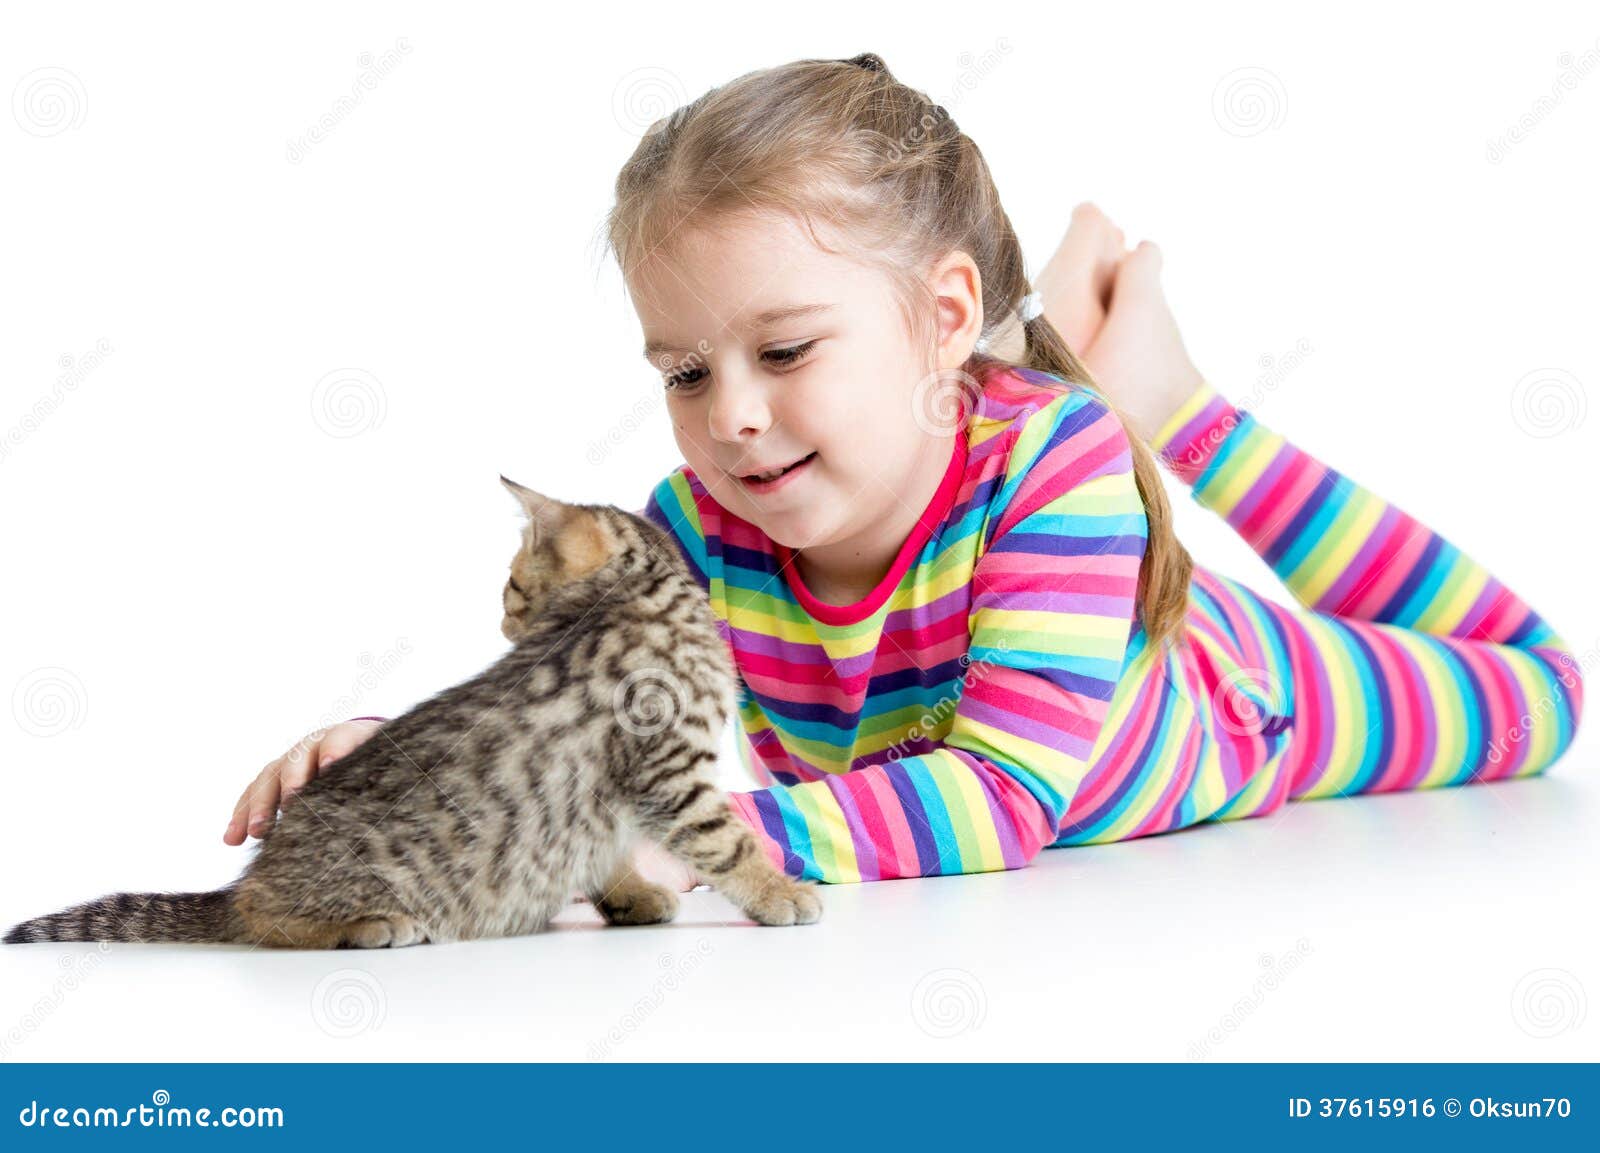 猫 猫咪 宠物 lapjeskat 动物 哺乳动物图片下载 - 觅知网